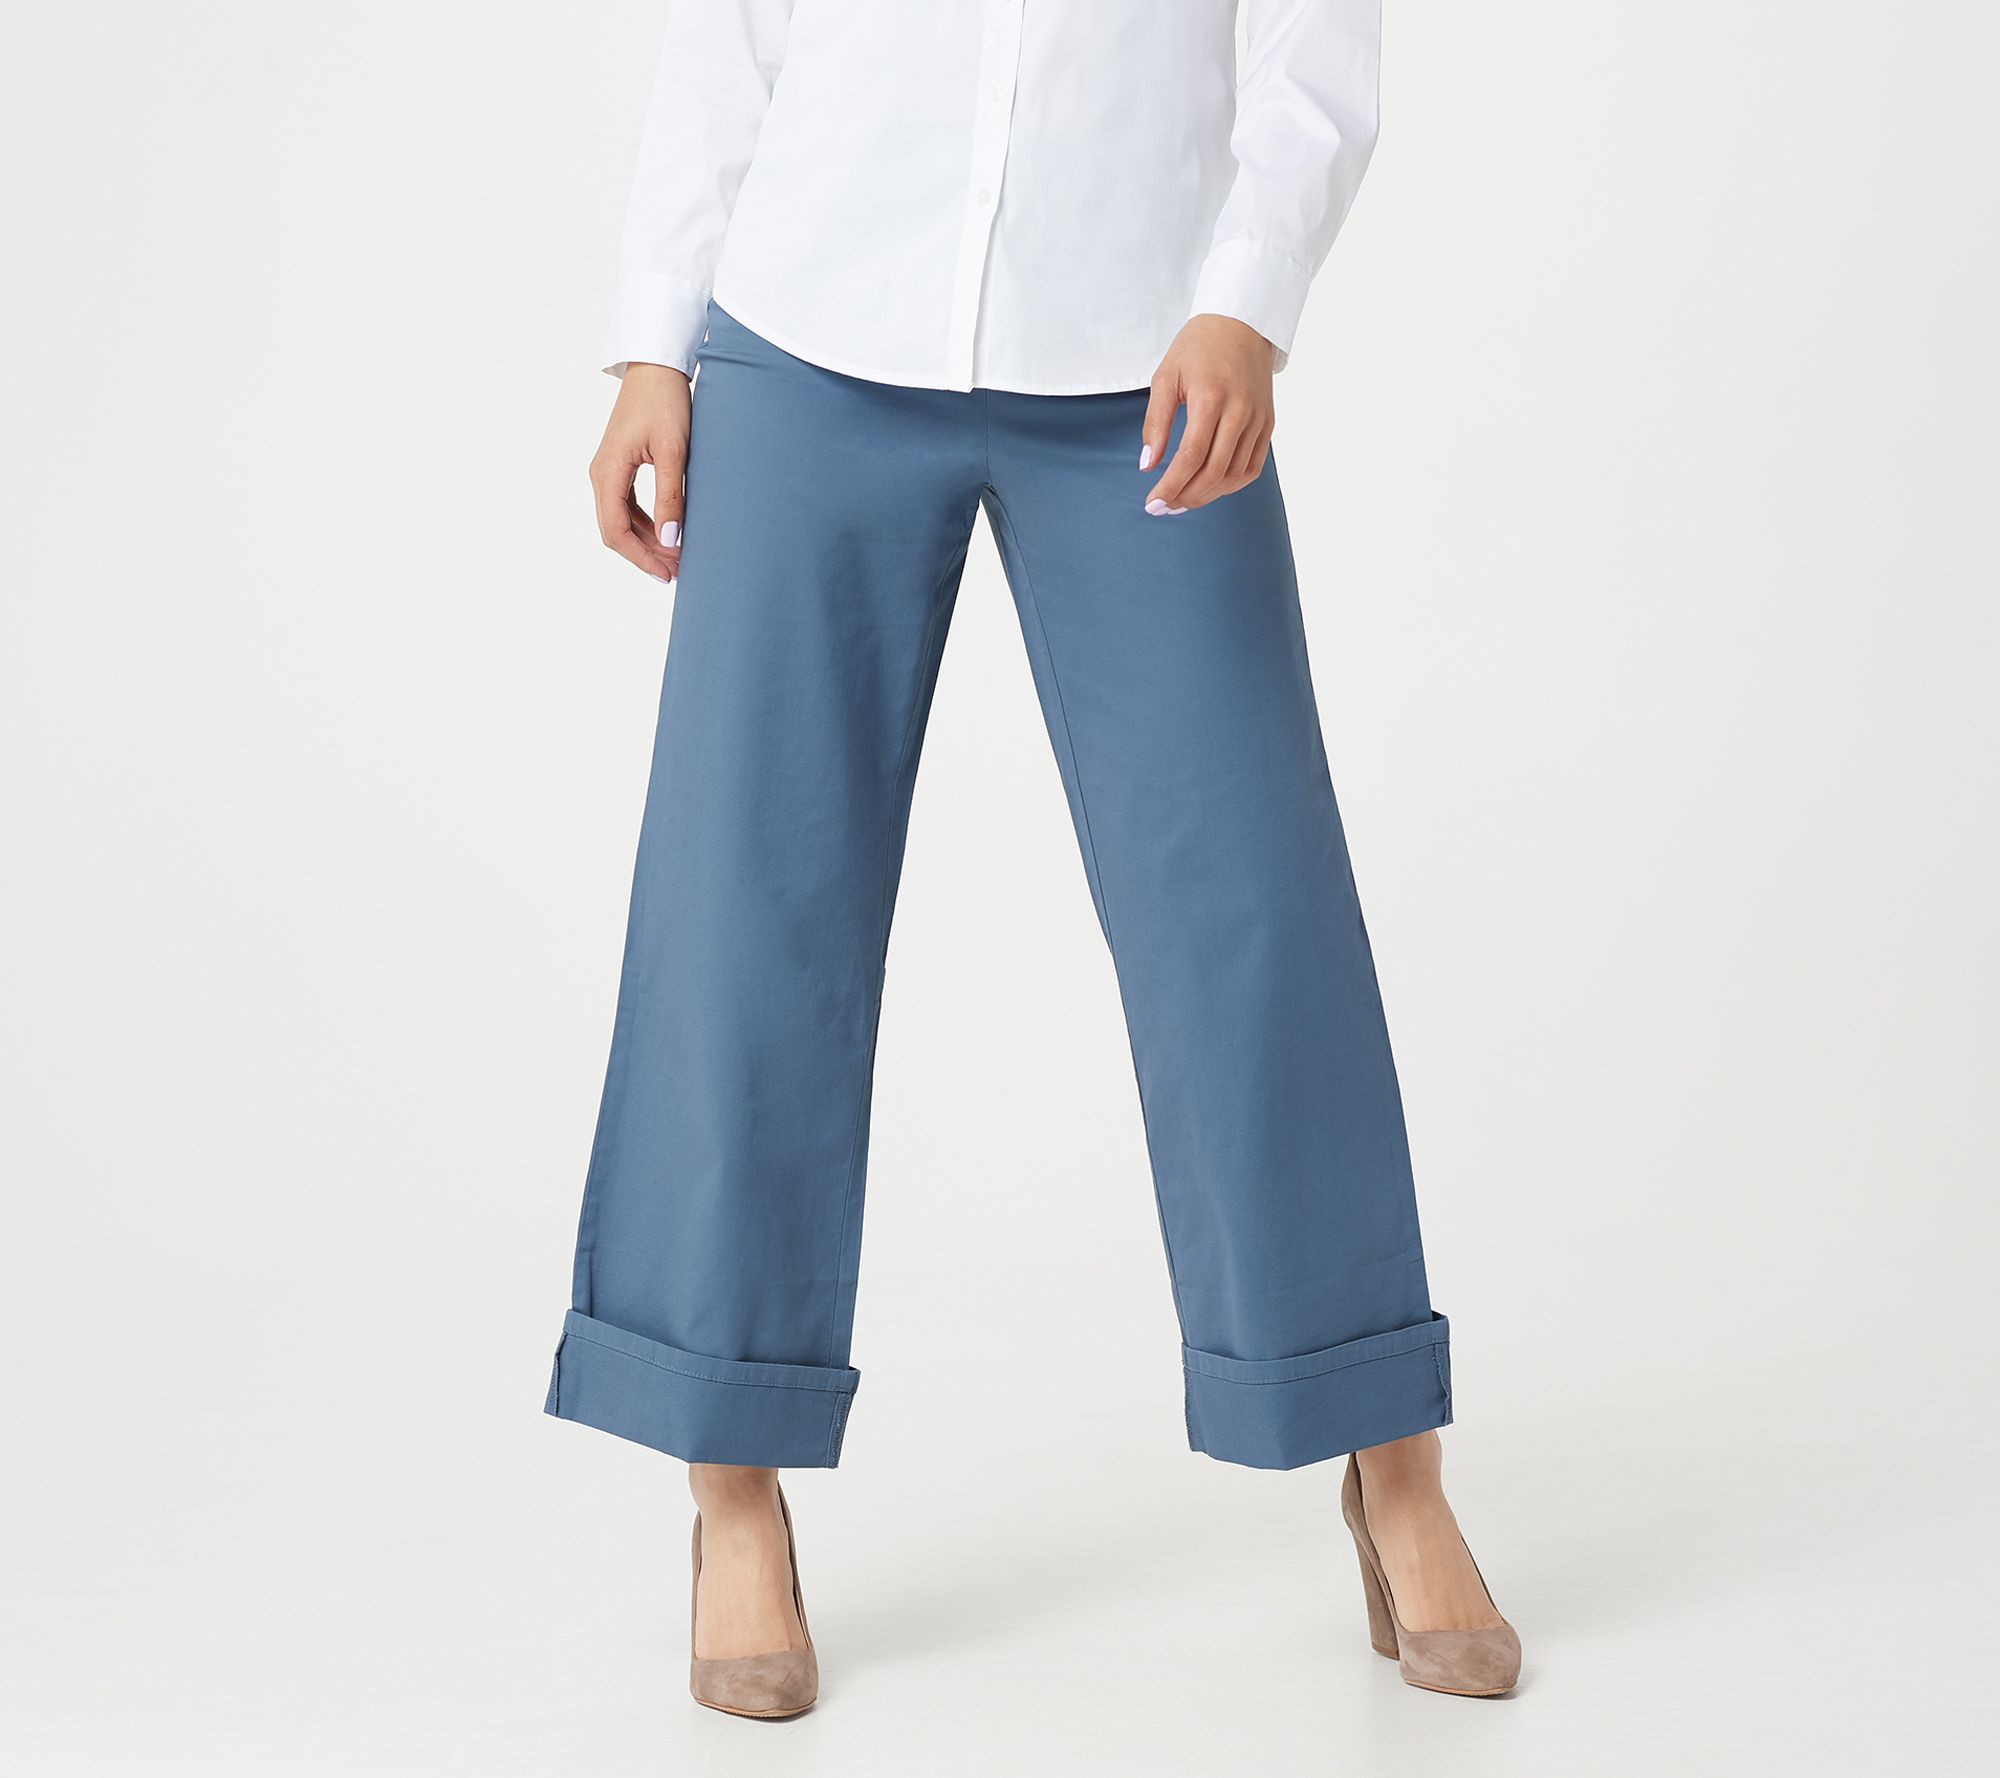 Martha Stewart Regular Chino Wide-Leg Cuffed Pants Ankle Pants 